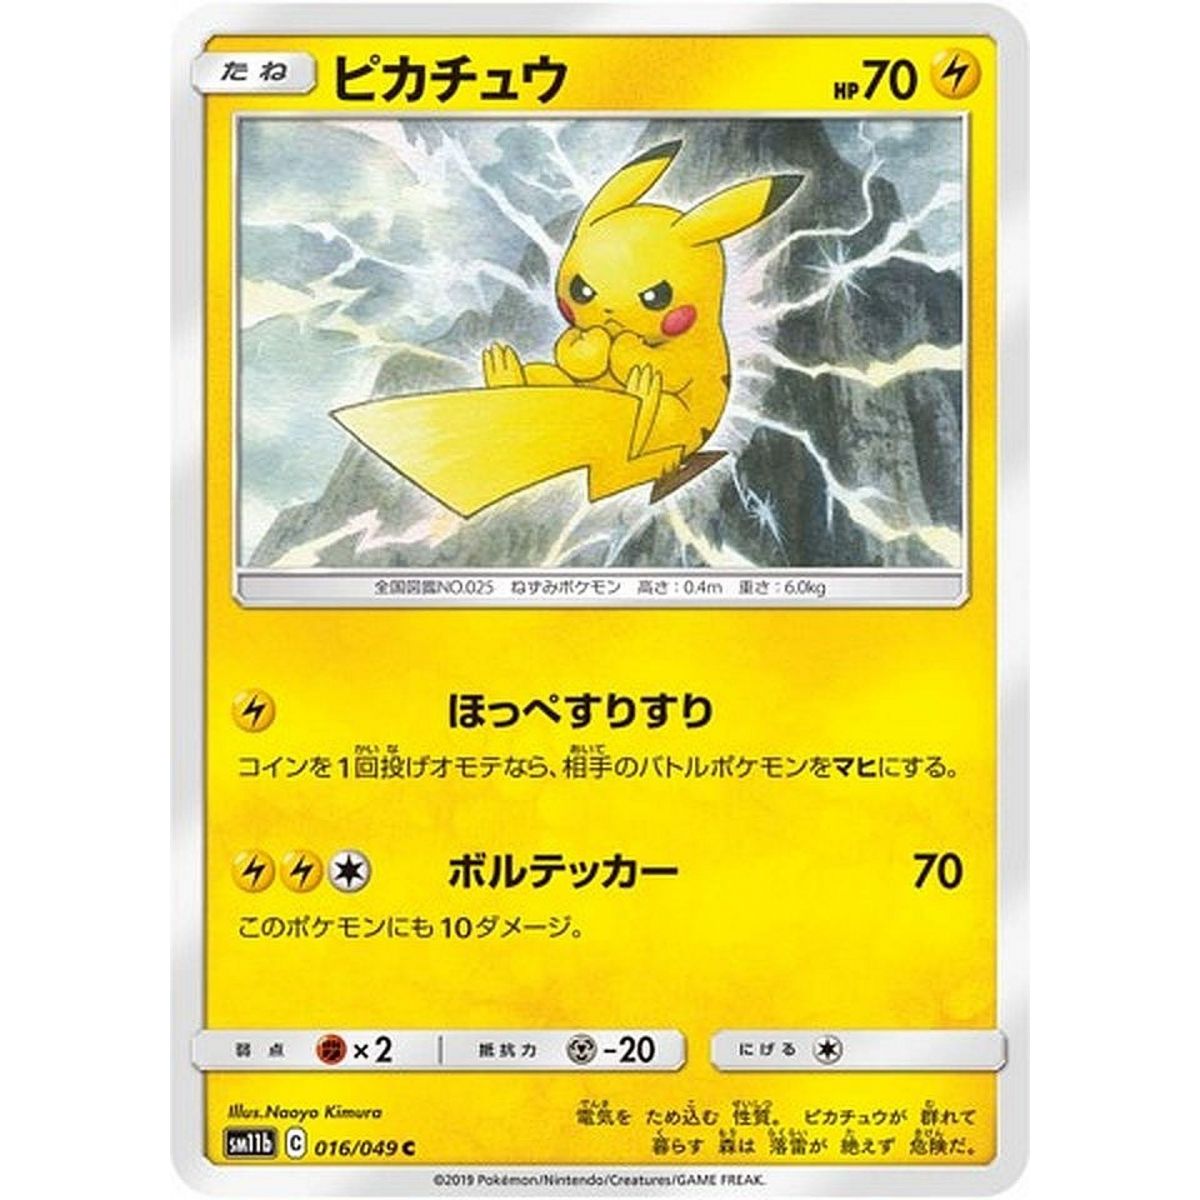 Item Pikachu 016/049 Dream League Commune Unlimited Japonais